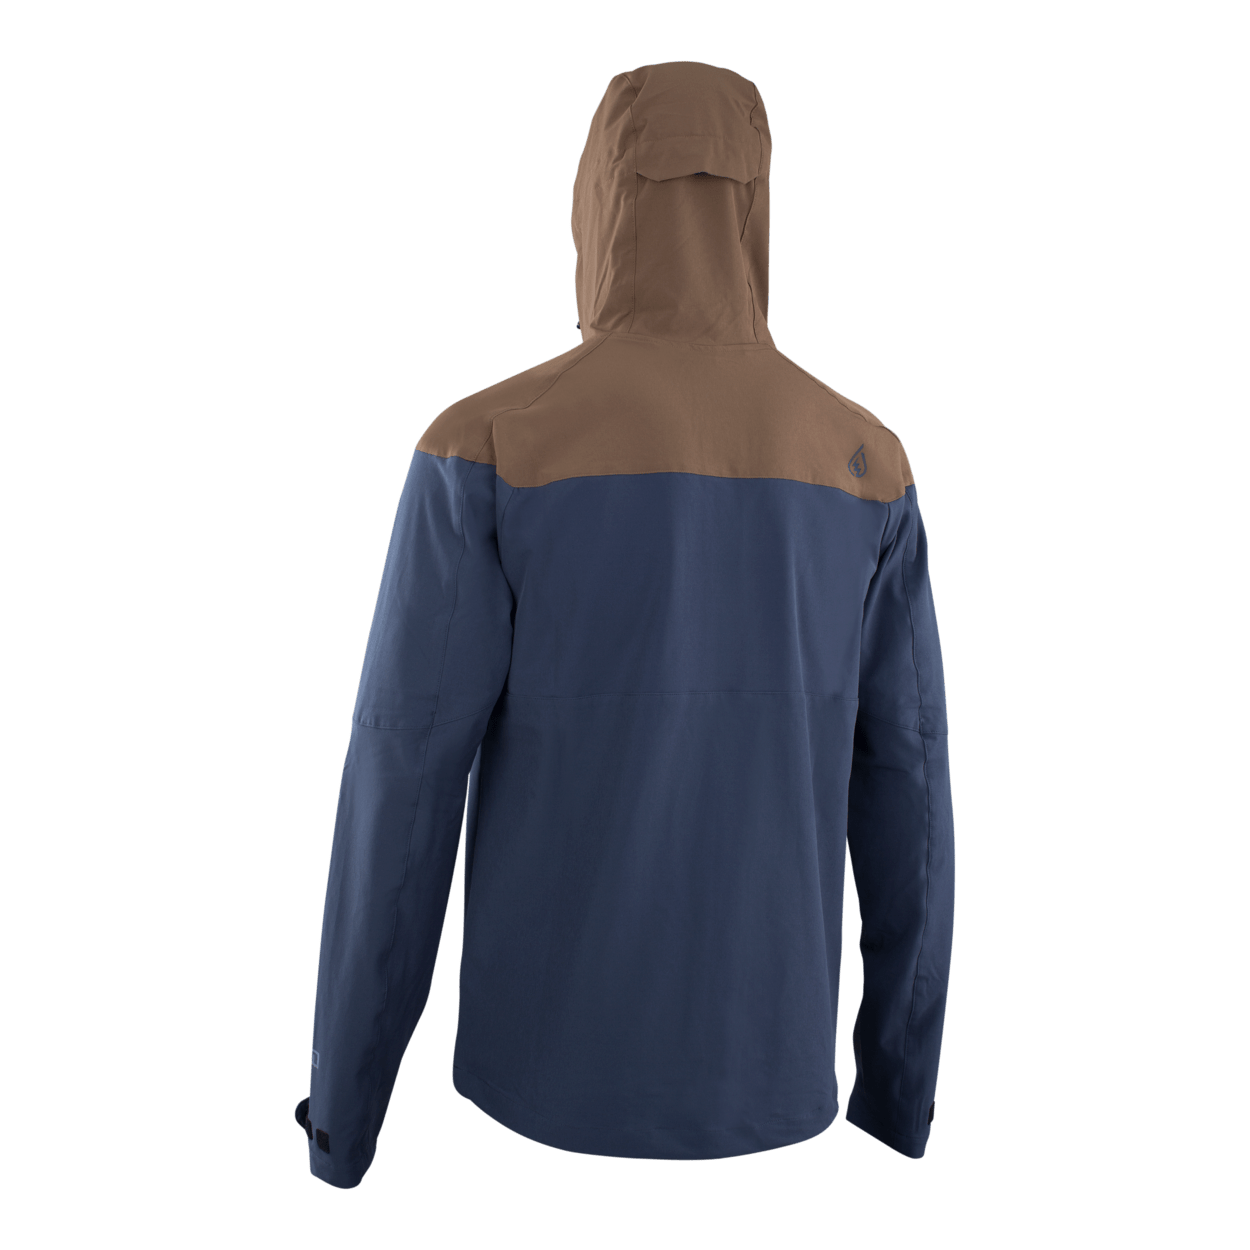 ION Men MTB Jacket 4W Softshell 2022